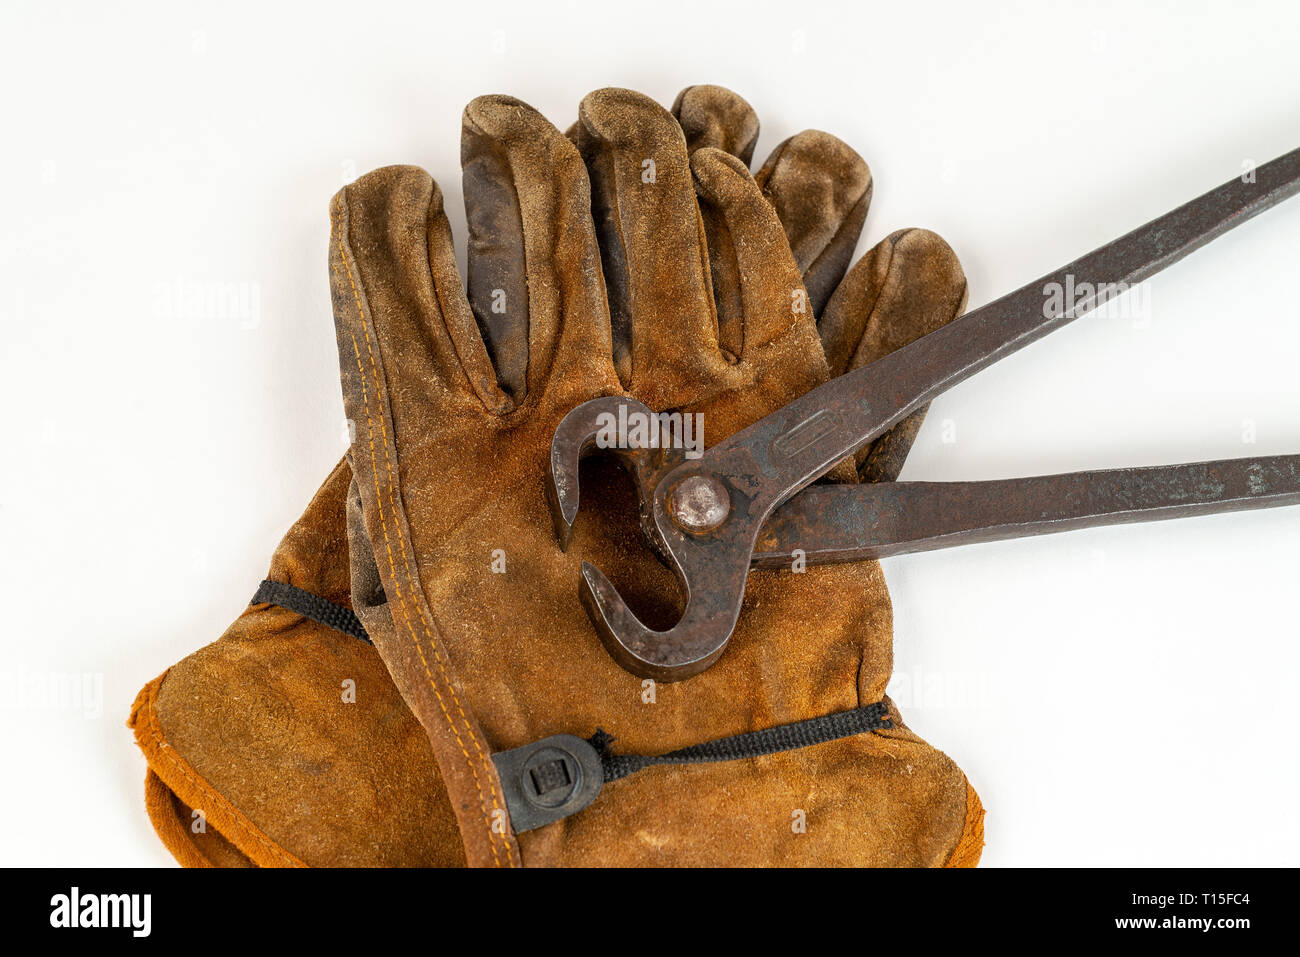 Vintage Paire de pinces des pinces et gants de travail Banque D'Images